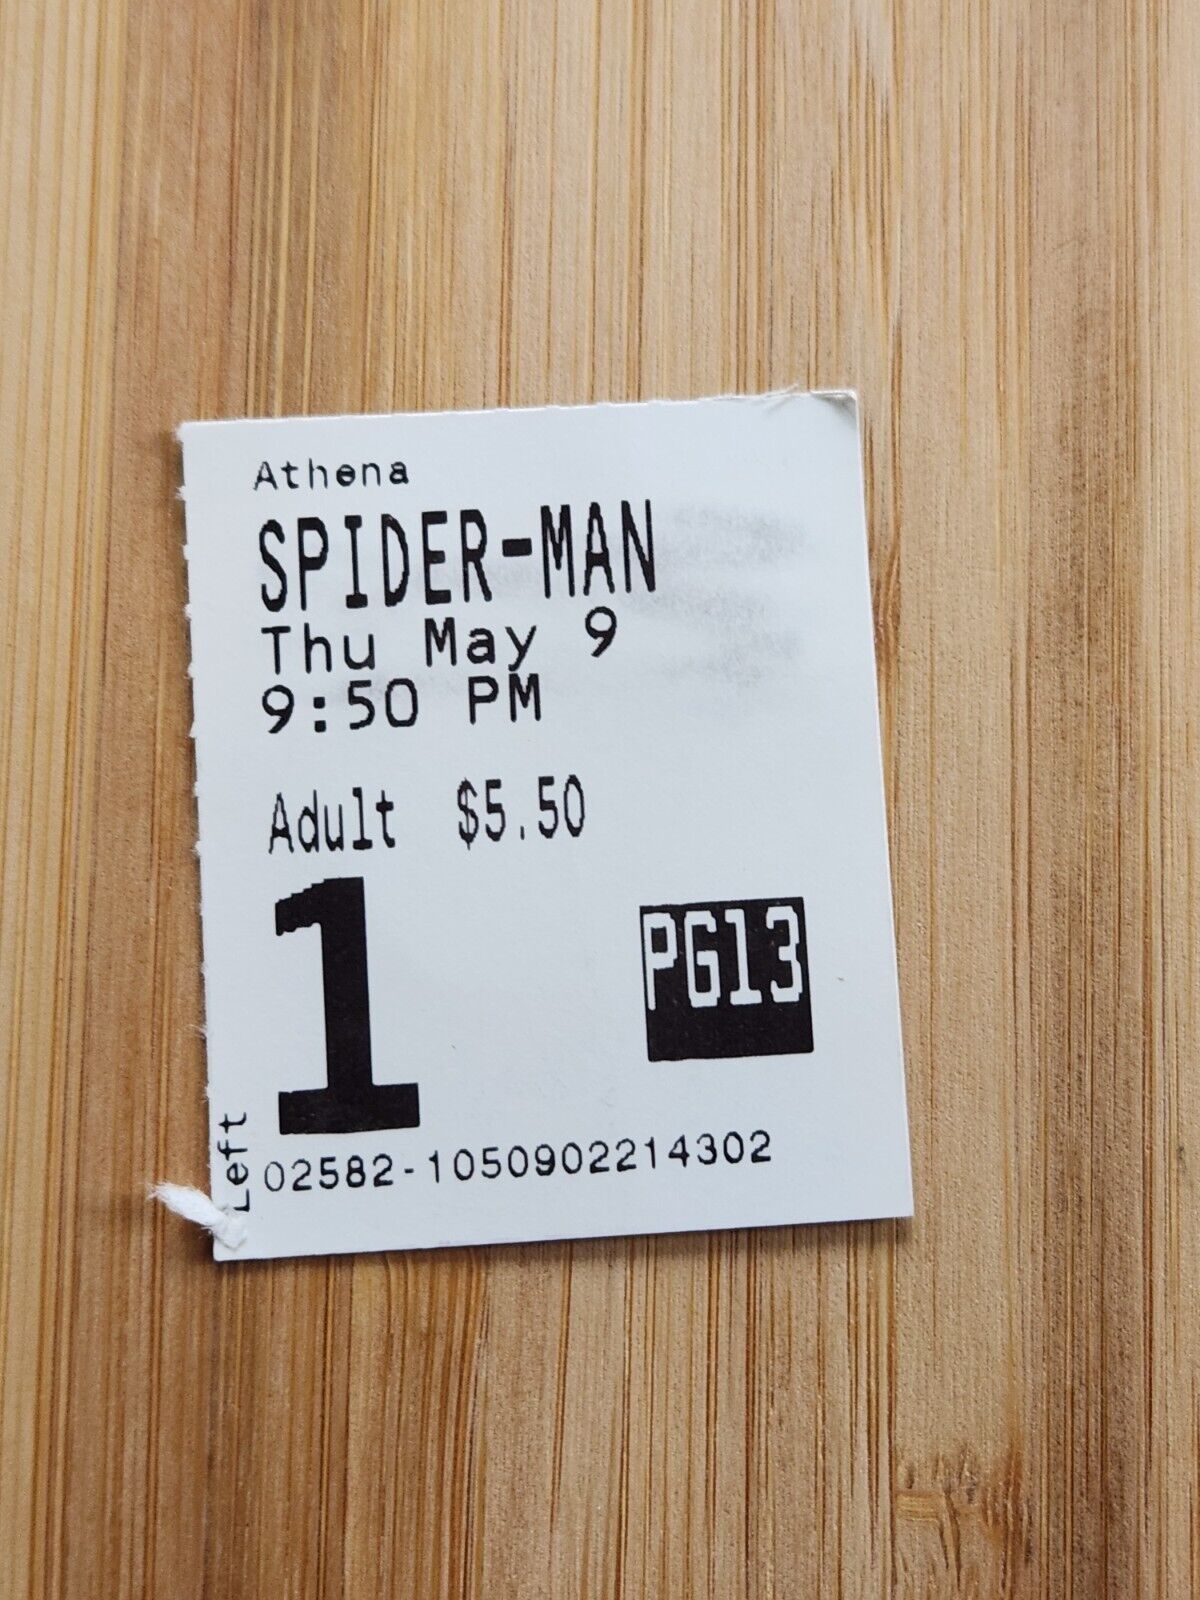 2002 SPIDERMAN Ticket Stub Spider-Man Ticket Stub ORIGINAL SPIDER-MAN Movie